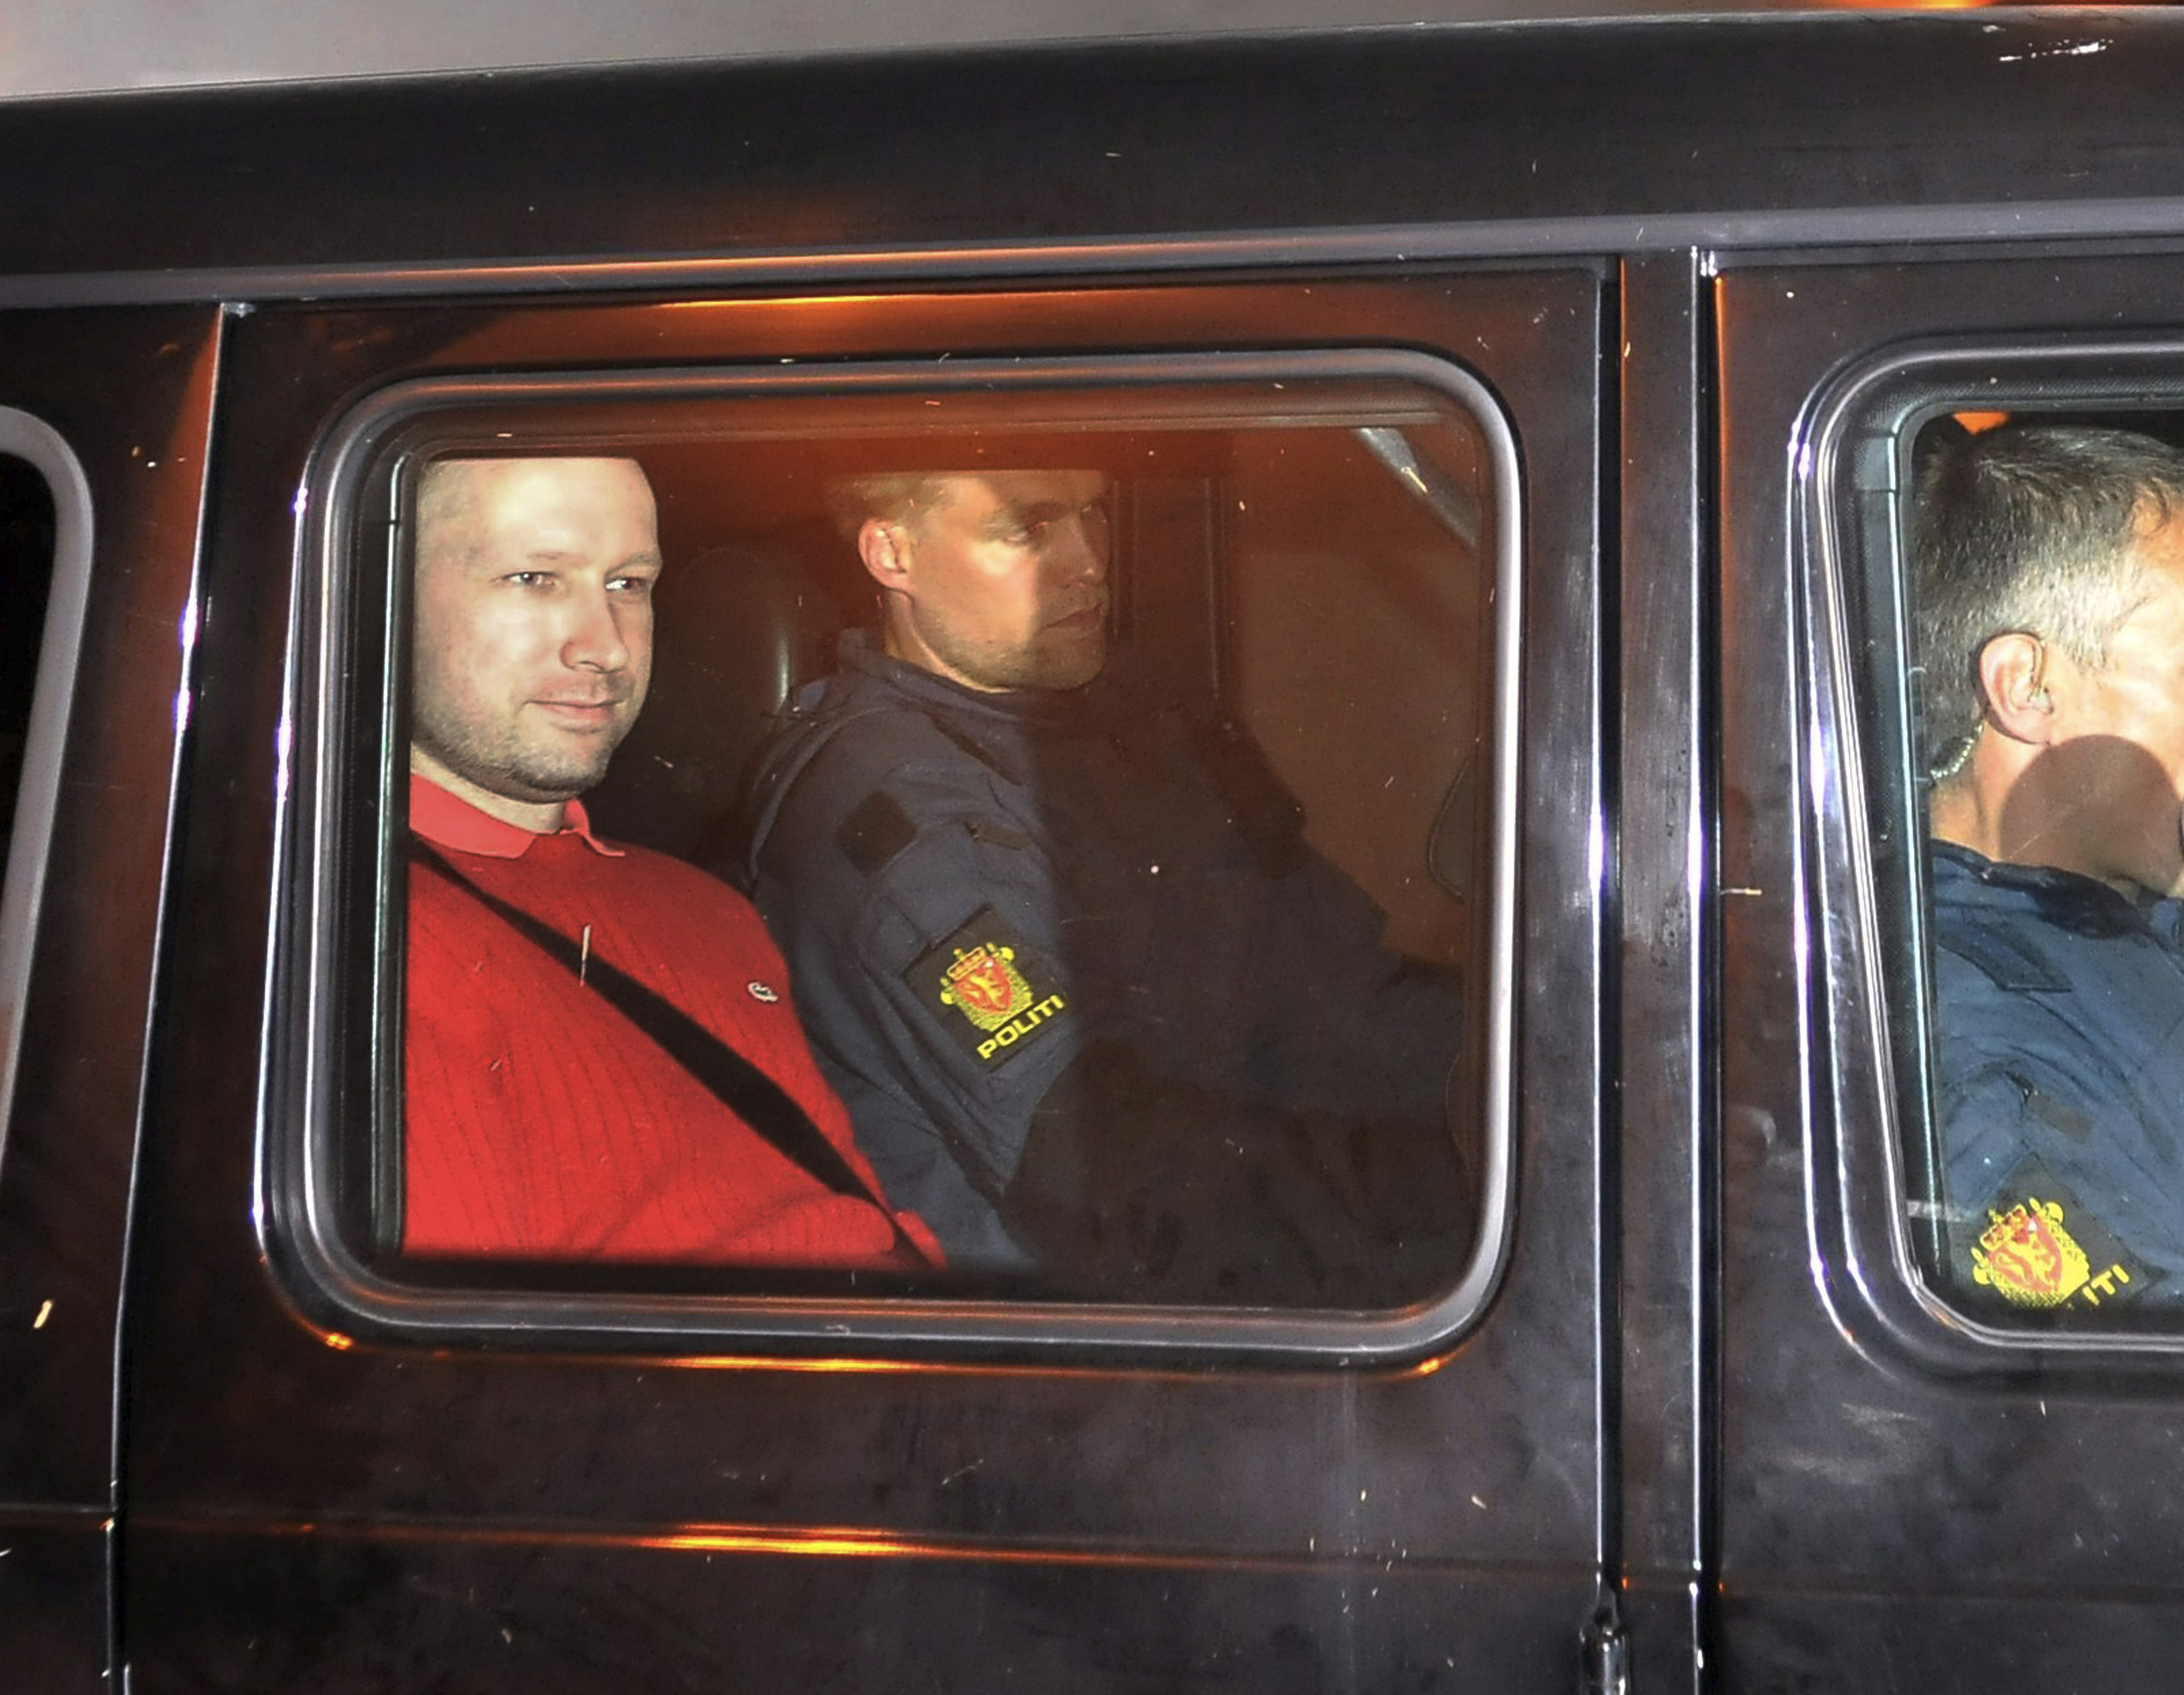 Klockan 18:27 bekräftar polisen att man gripit en skytt. Det visar sig senare att det är Anders Behring Breivik. 